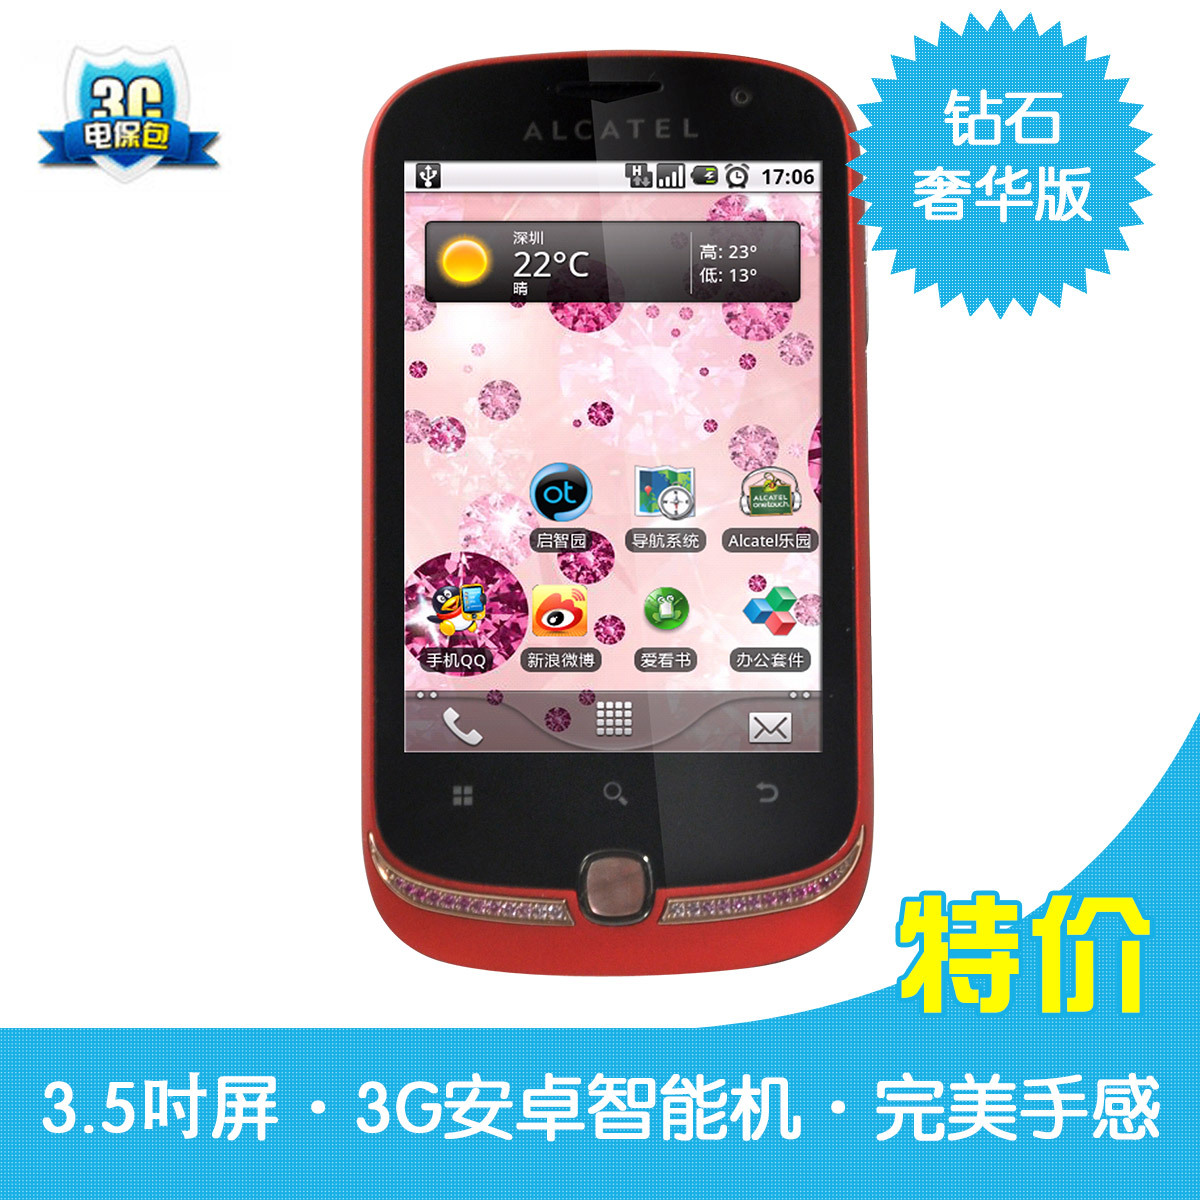 全球限量 Alcatel/阿尔卡特 OT-990M奢华版"宝贝" 安卓3G智能手机